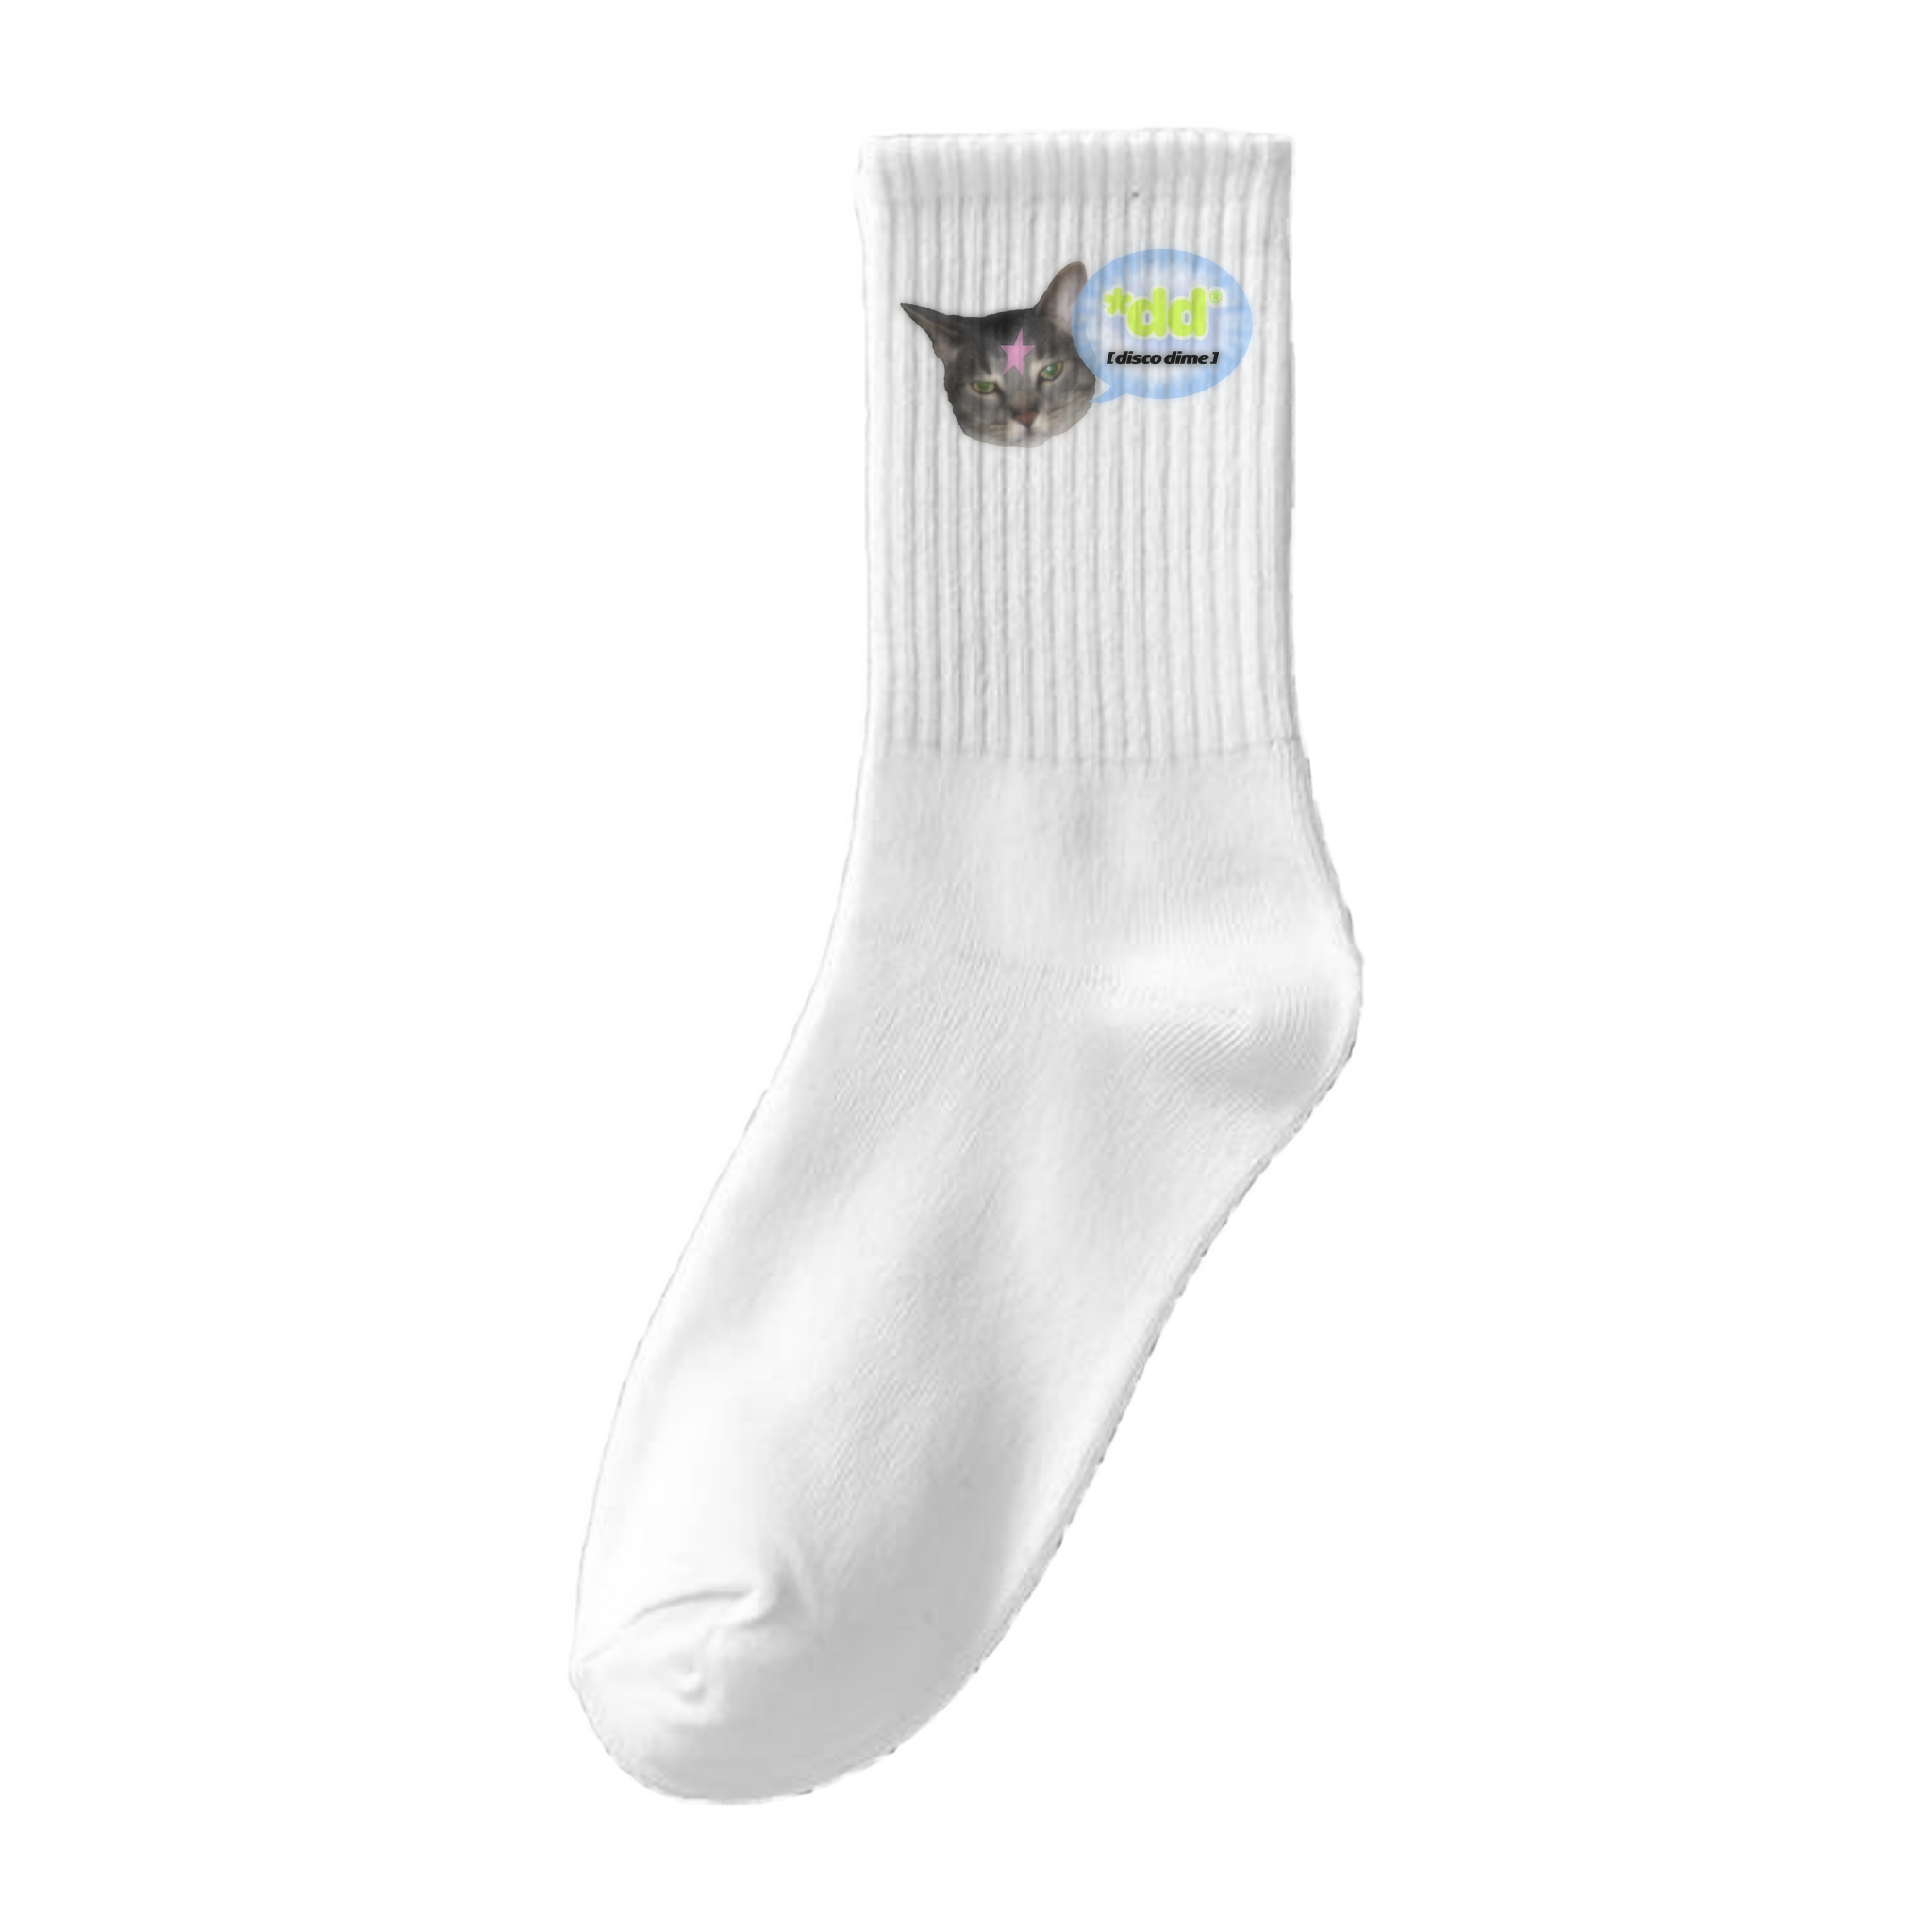 Angry Kitty Socks